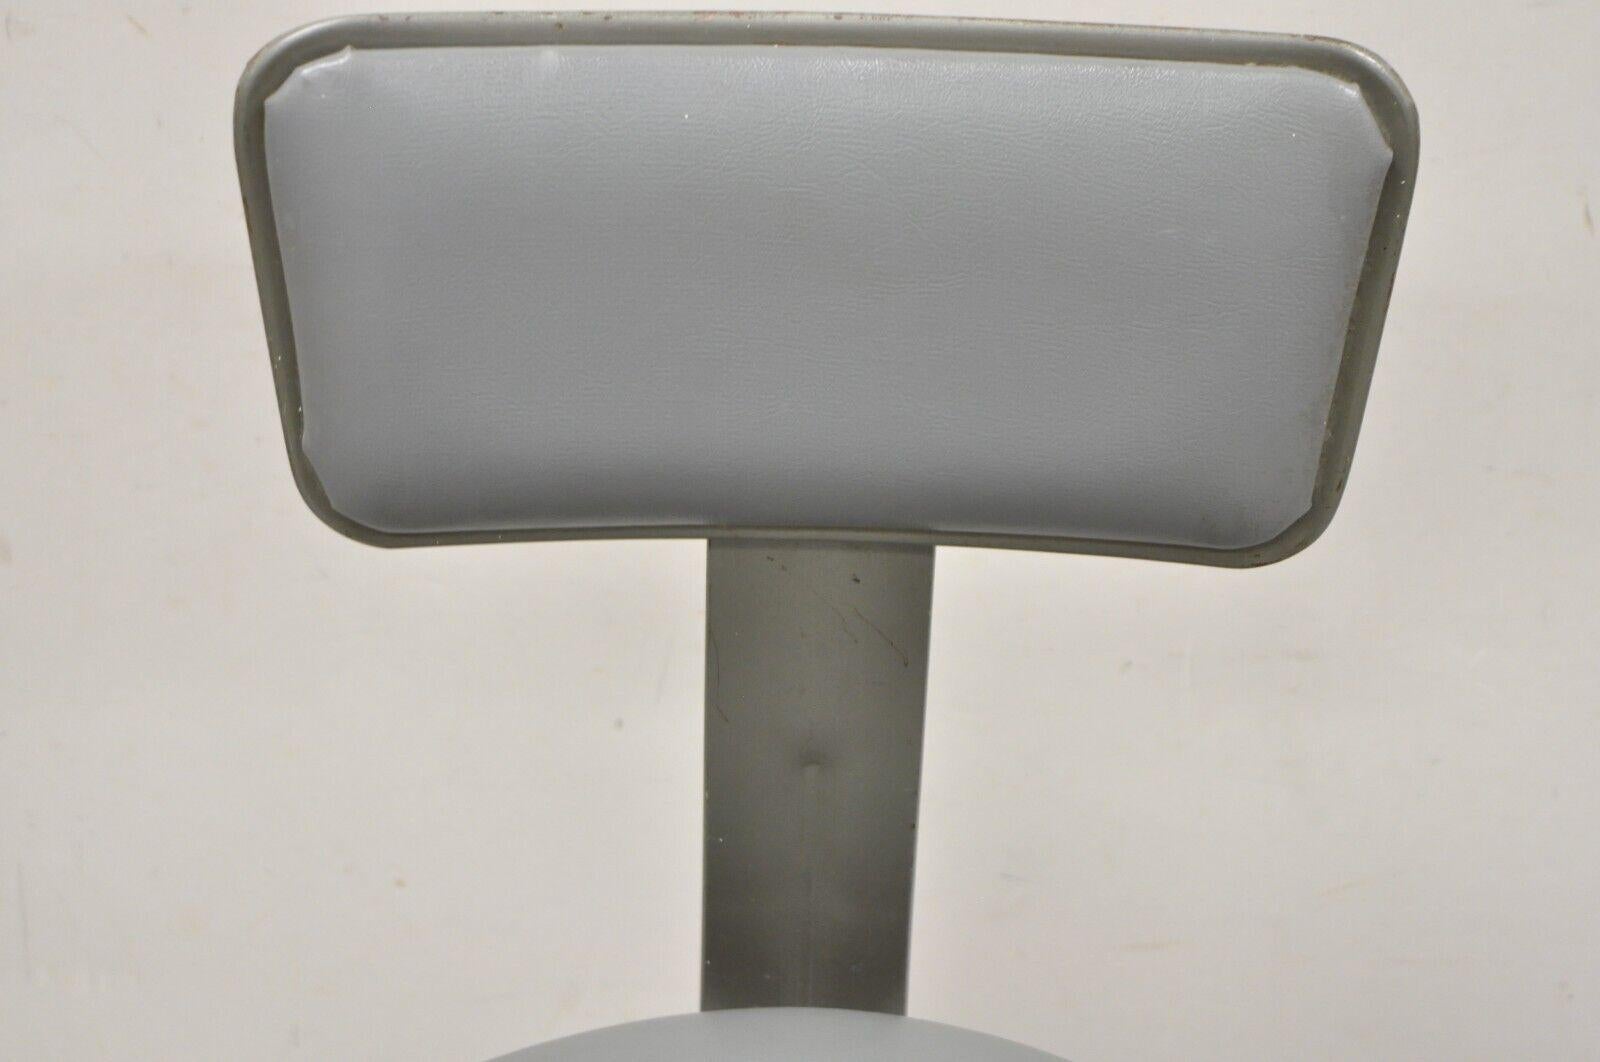 Vintage Industrial Gray Steel Metal Adjustable Drafting Stool Work Chair 4